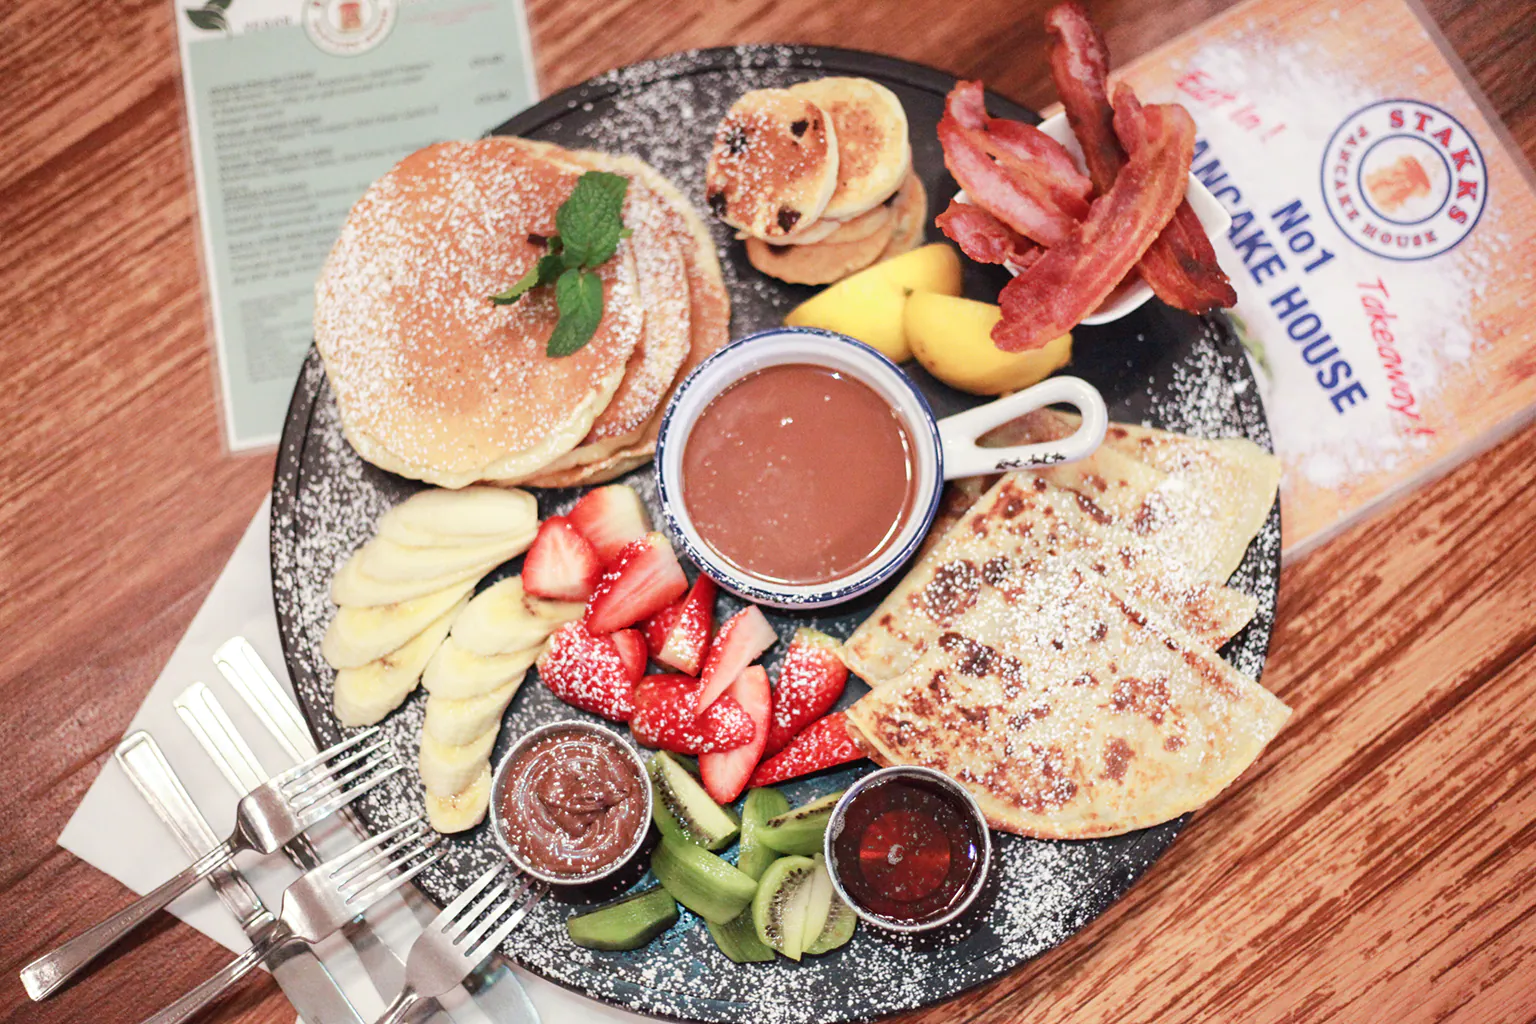 February Special – STAKKS Pancake Platter